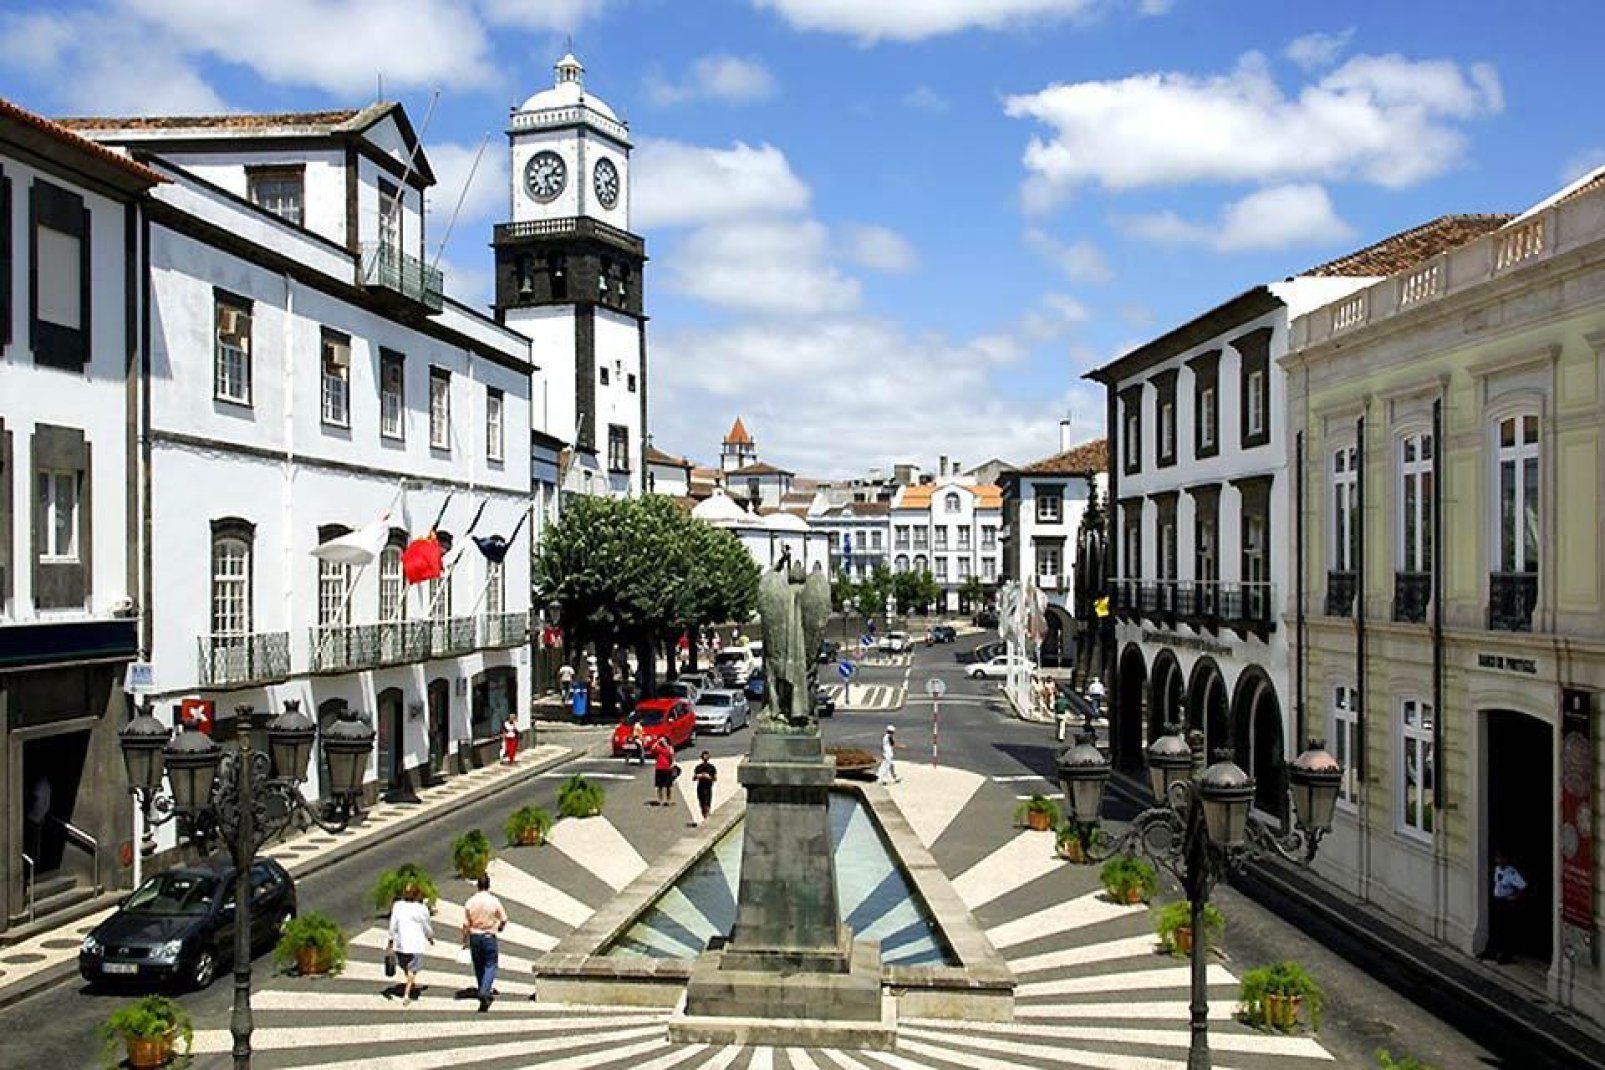 Ponta Delgada, sur l'île de São Miguel, est la plus grande ville de l'archipel et le siège de la présidence de la région. Son bord de mer animé permet de relaxantes promenades.